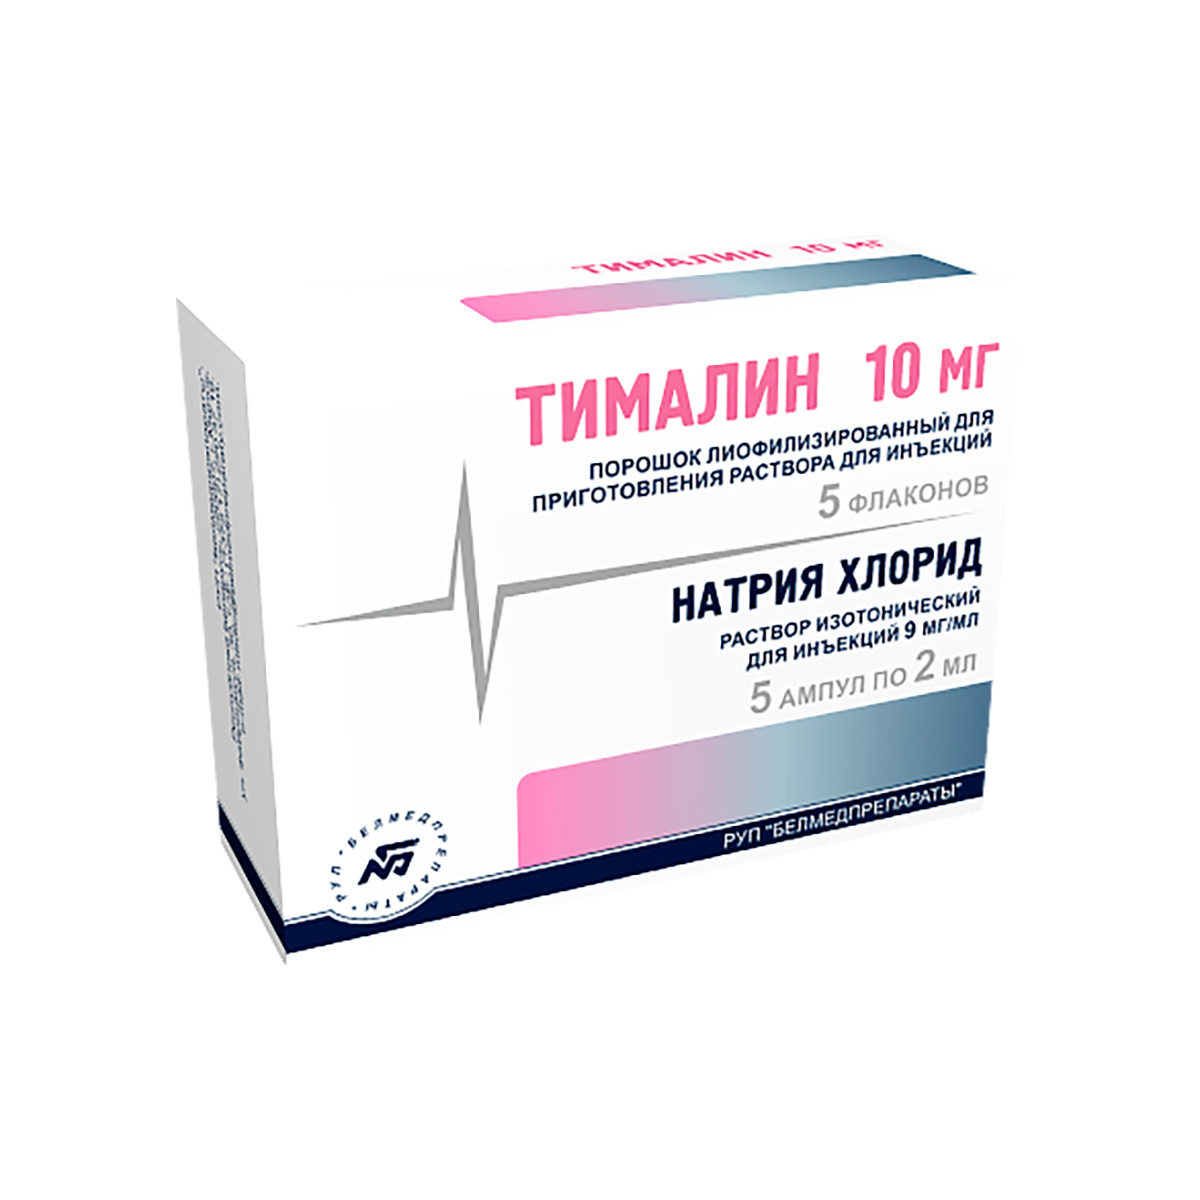 Тималин 10 мг лиофилизат для приготовления раствора для инъекций флакон 5 шт